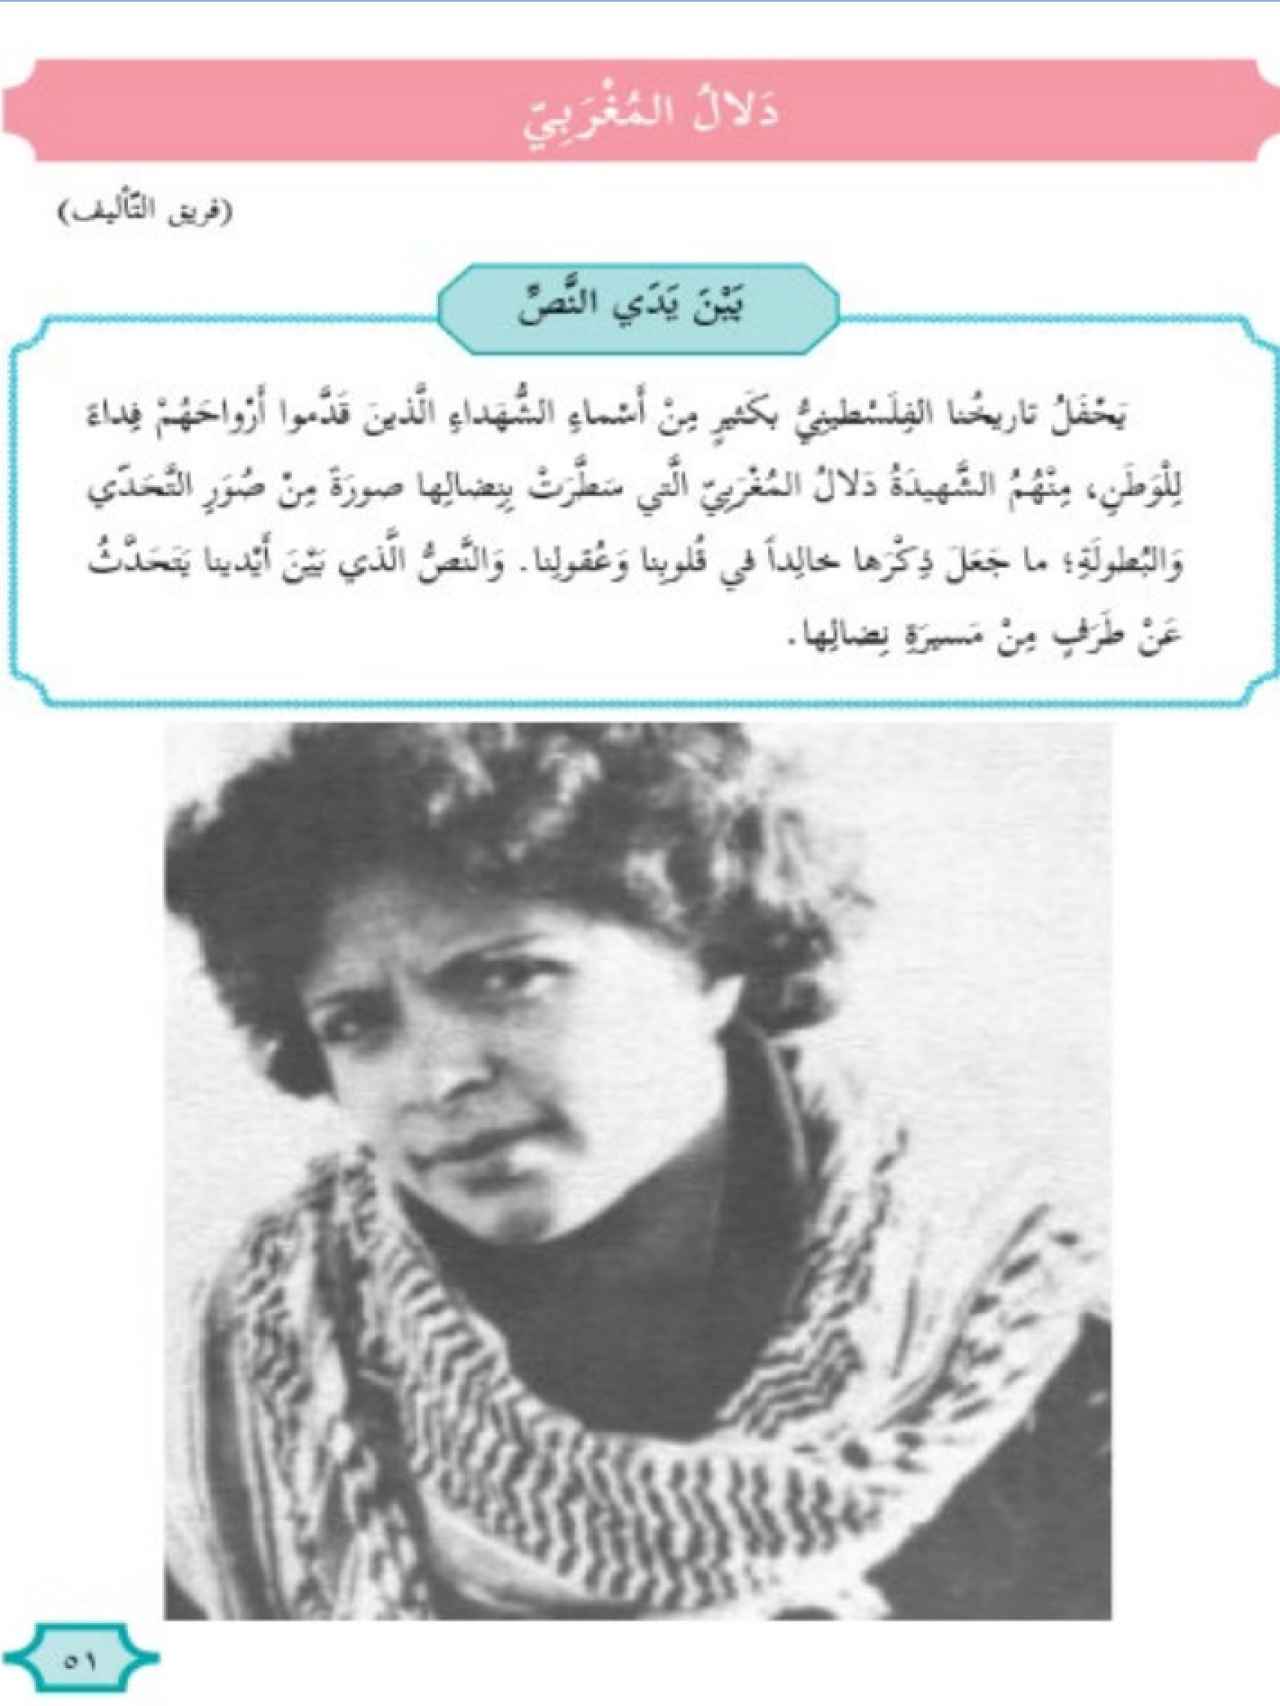 Foto de la terrorista Dalal al-Mughrabi junto a un texto que la describe como una heroína.